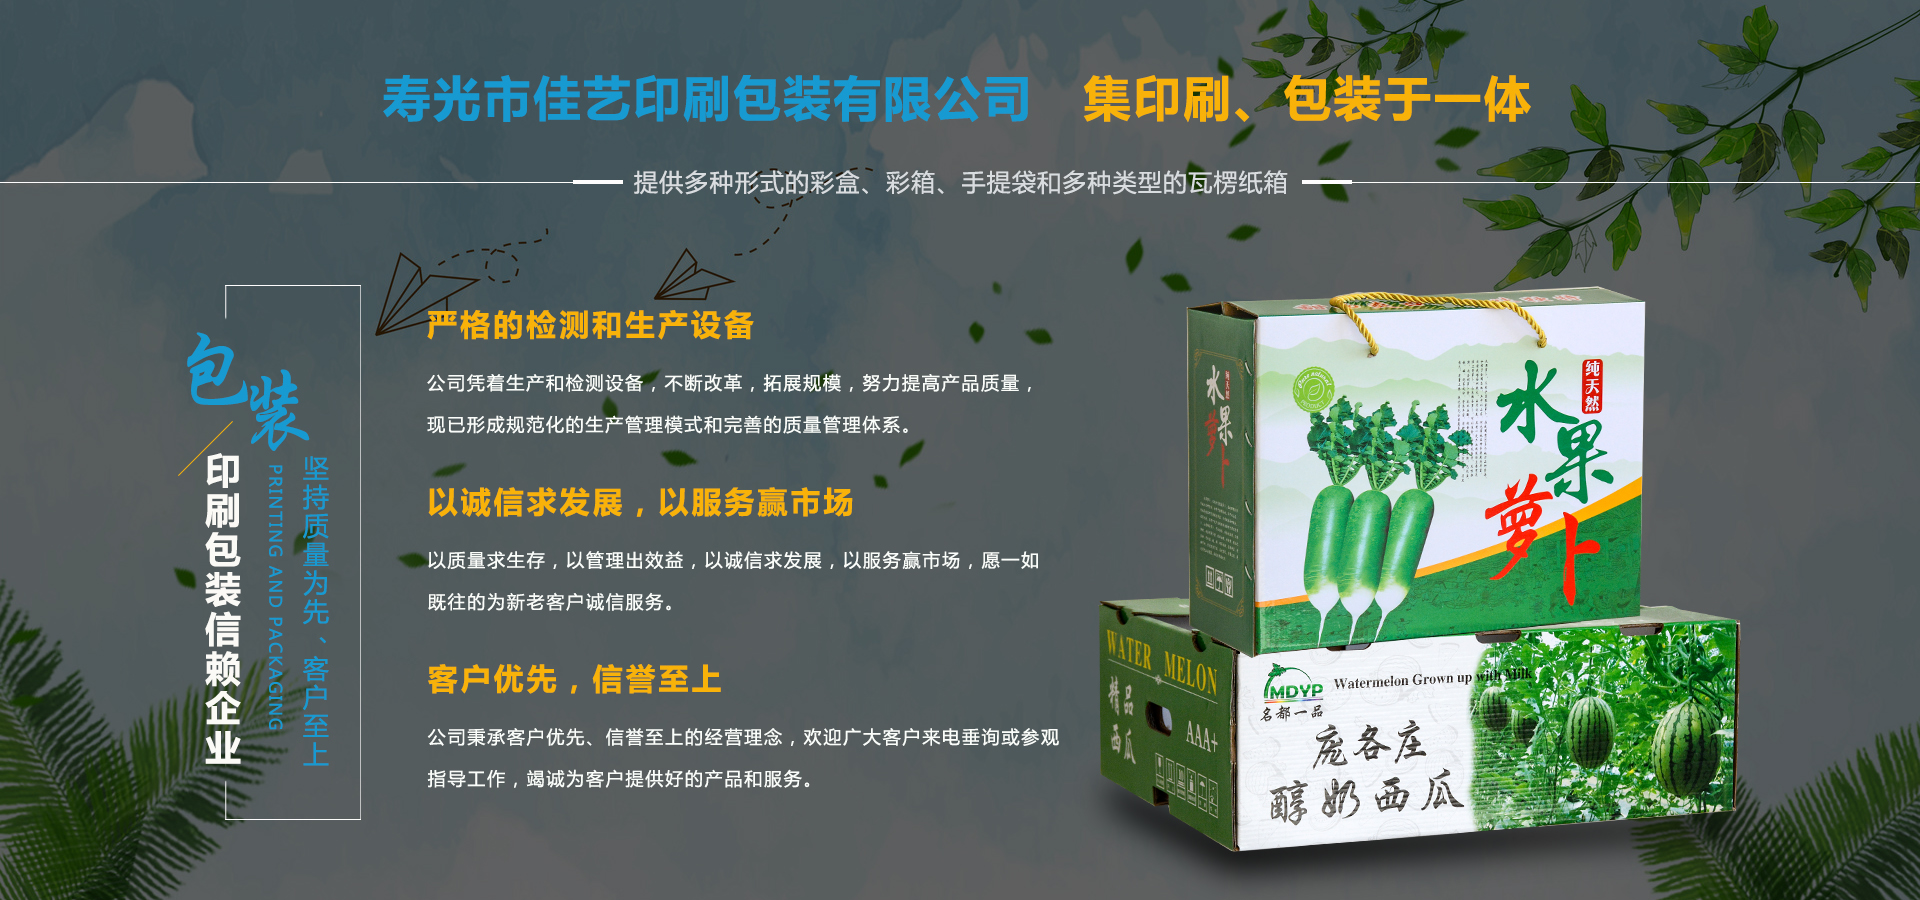 寿光市j9九游会 - 真人游戏第一品牌印刷包装有限公司服务